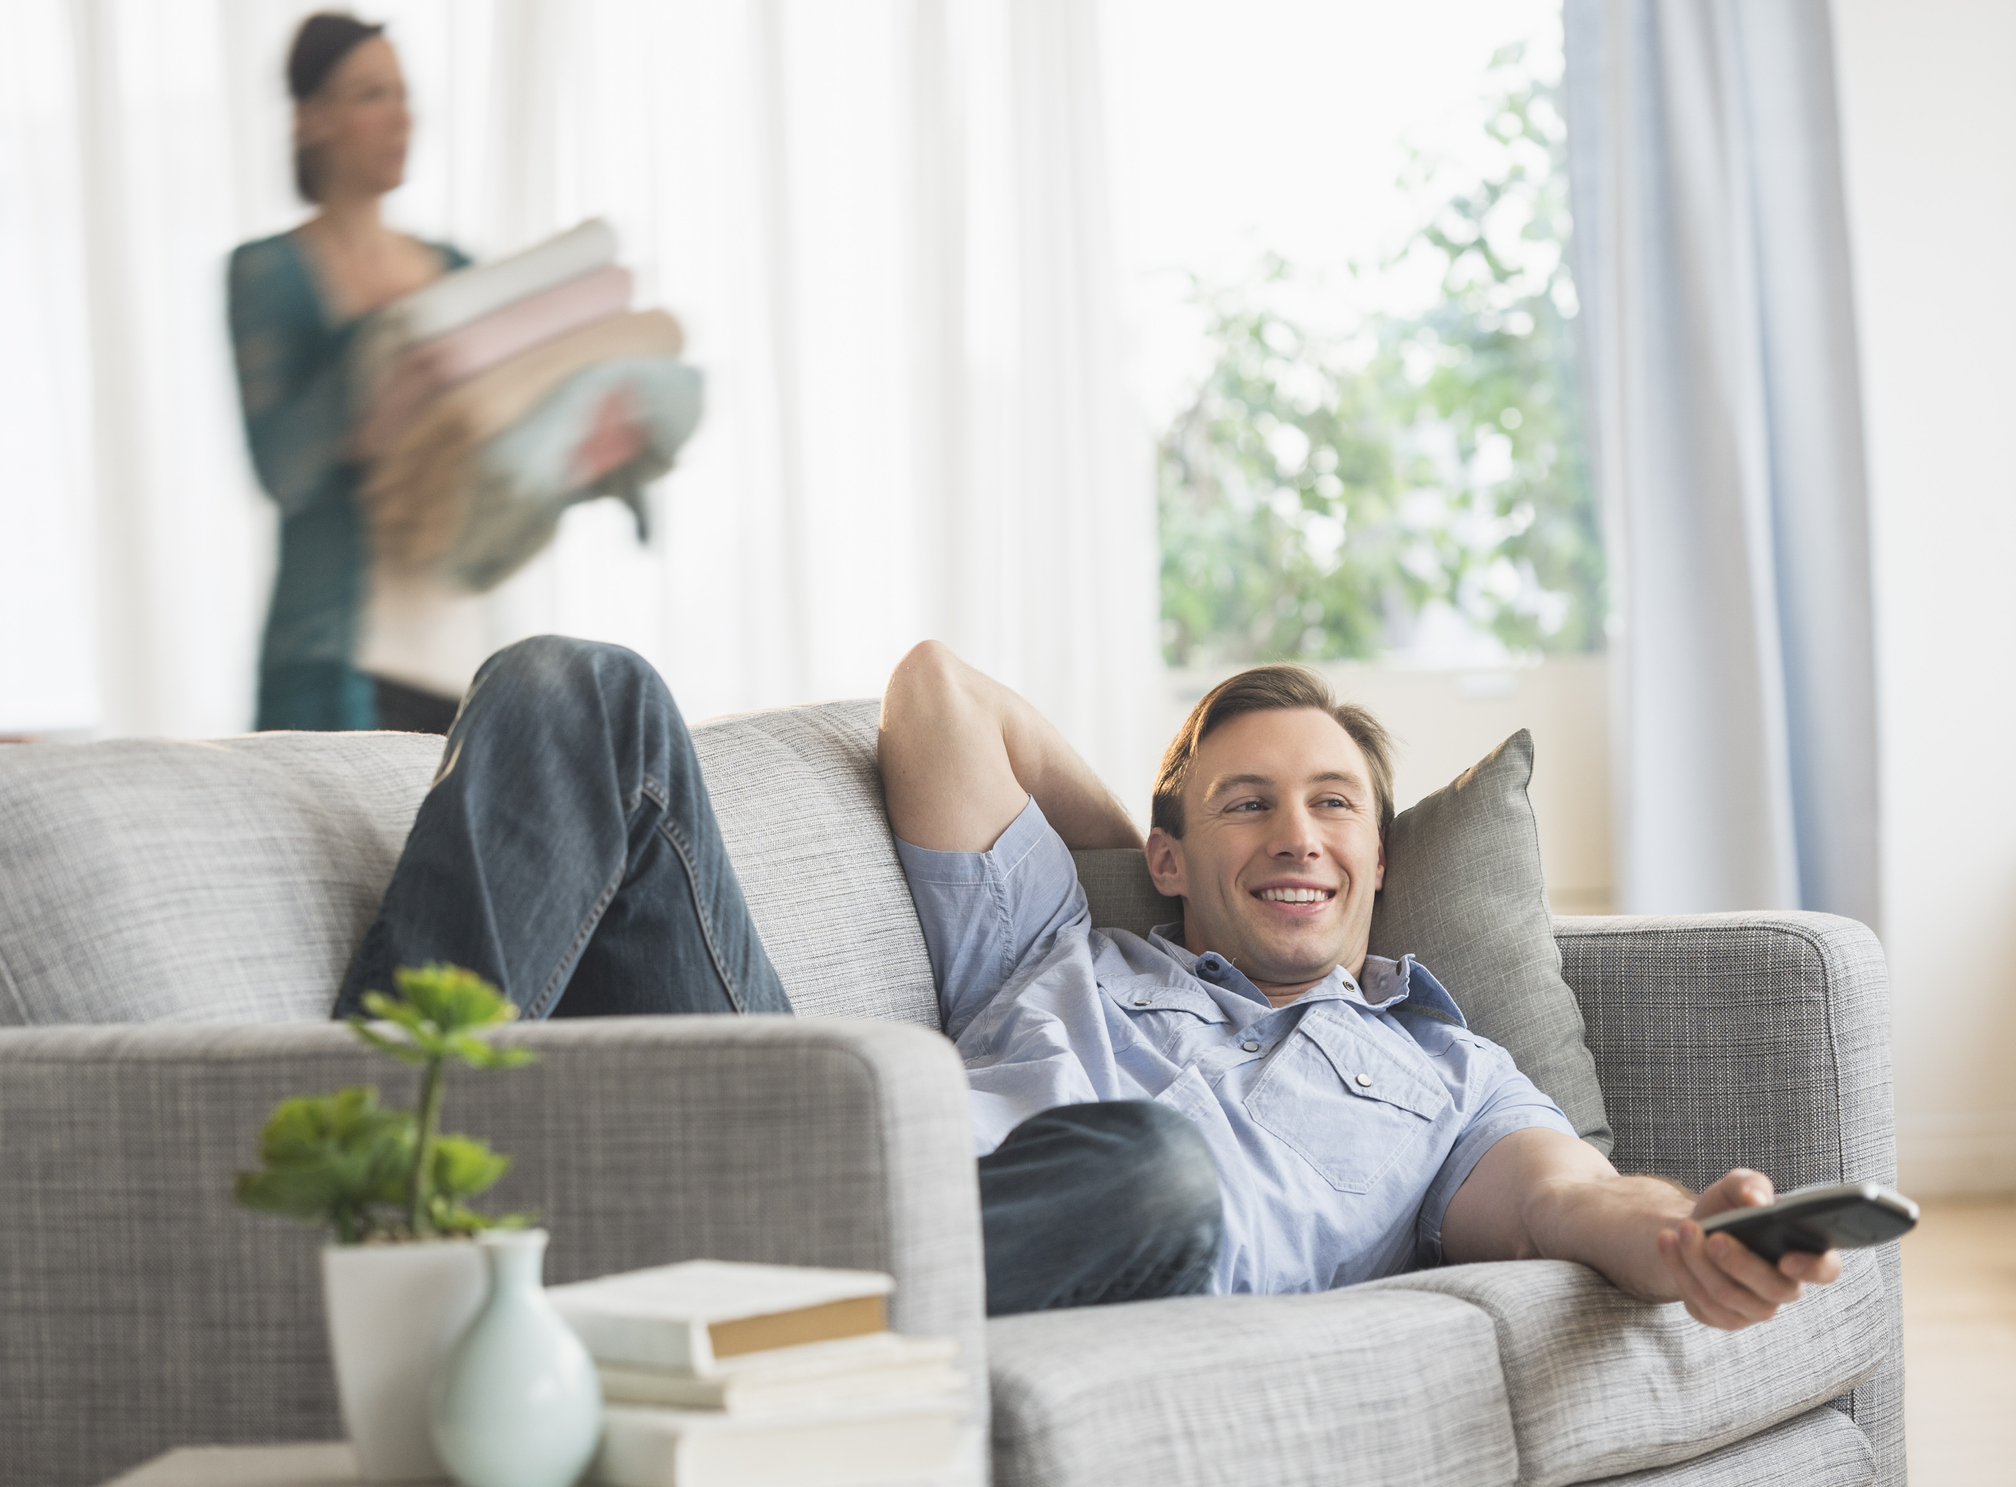 Что делает муж выходной. Фото людей в домашней обстановке. Мужские обязанности по дому фото. Man watching TV on Sofa. On the Sofa.